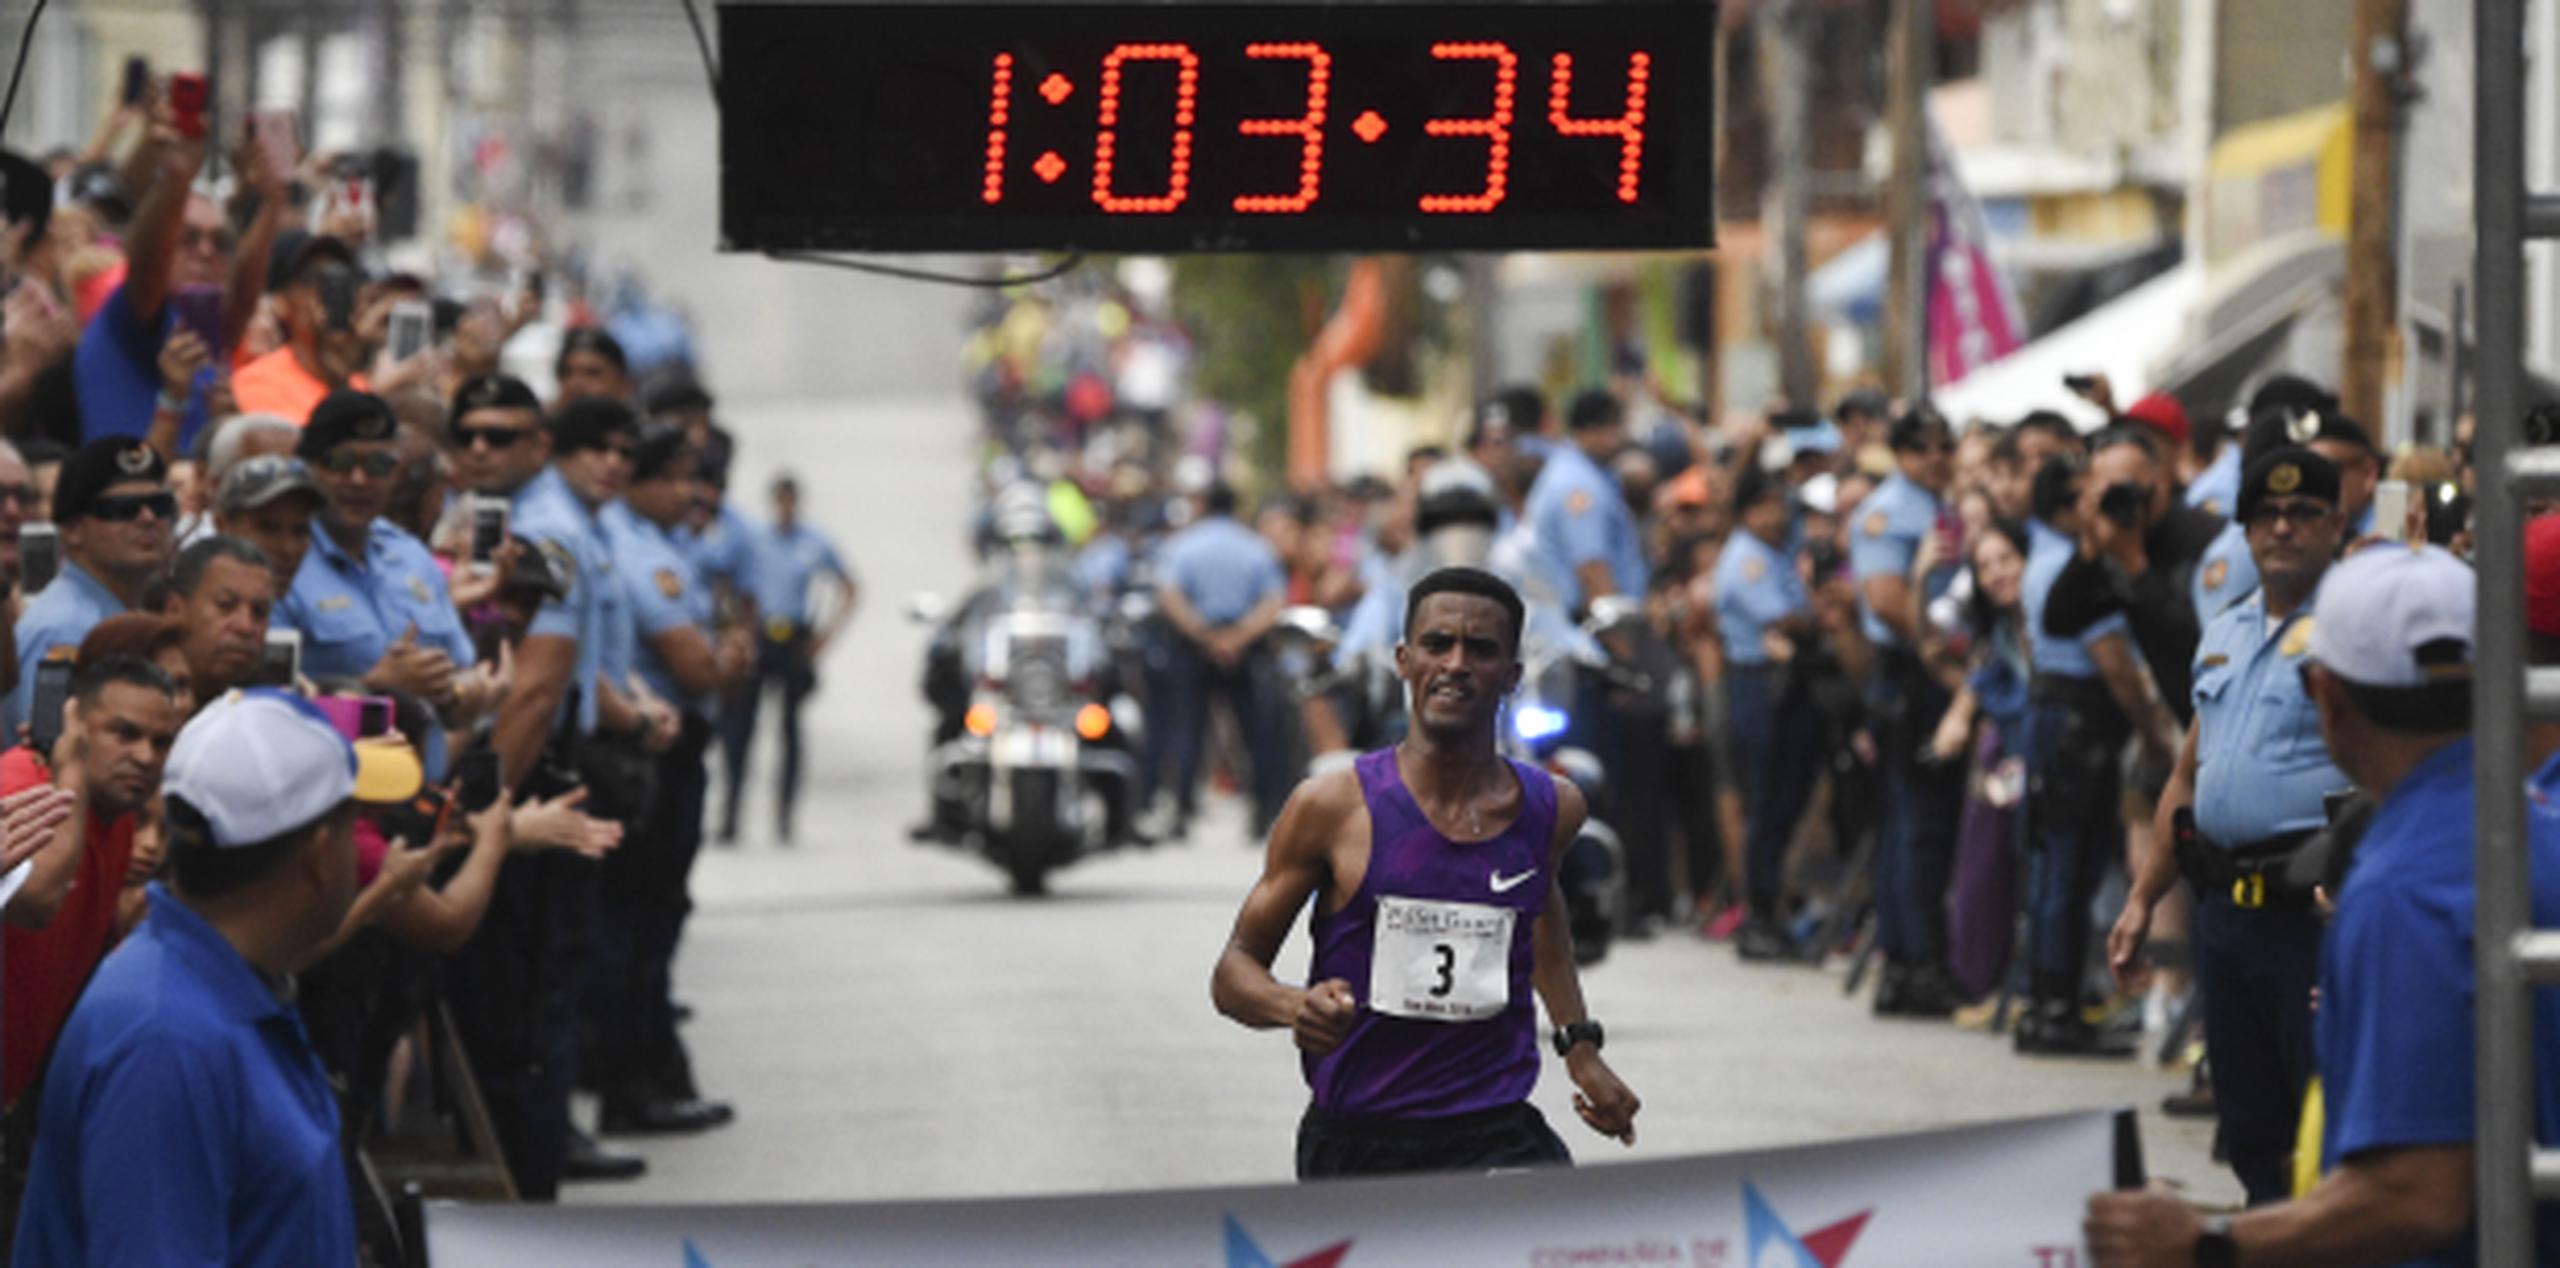 “Es fabuloso correr en la mañana”, dijo Tuemay Tsegay, ganador de esta edición del evento que por primera vez en medio siglo se corre a las 7:00 a.m. (tony.zayas@gfrmedia.com)